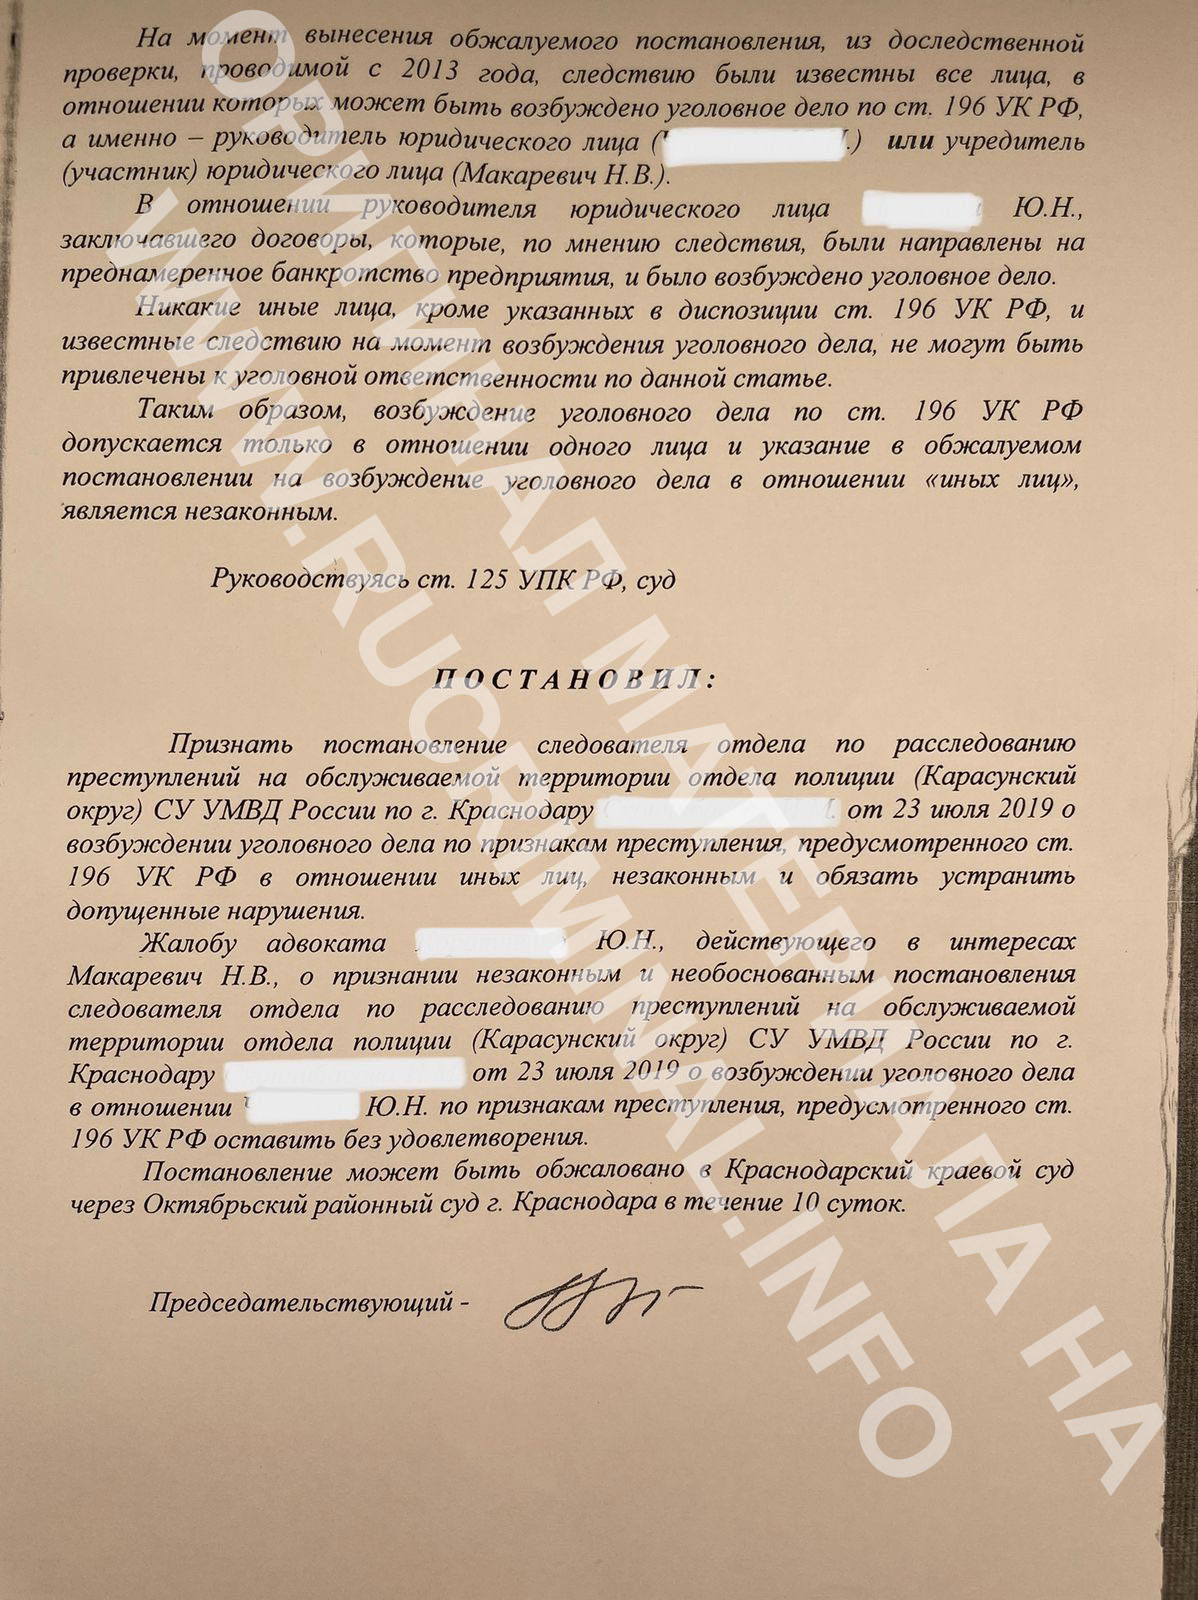 Terminating the corner of the case Makarevich.  Judge Kazanskaya